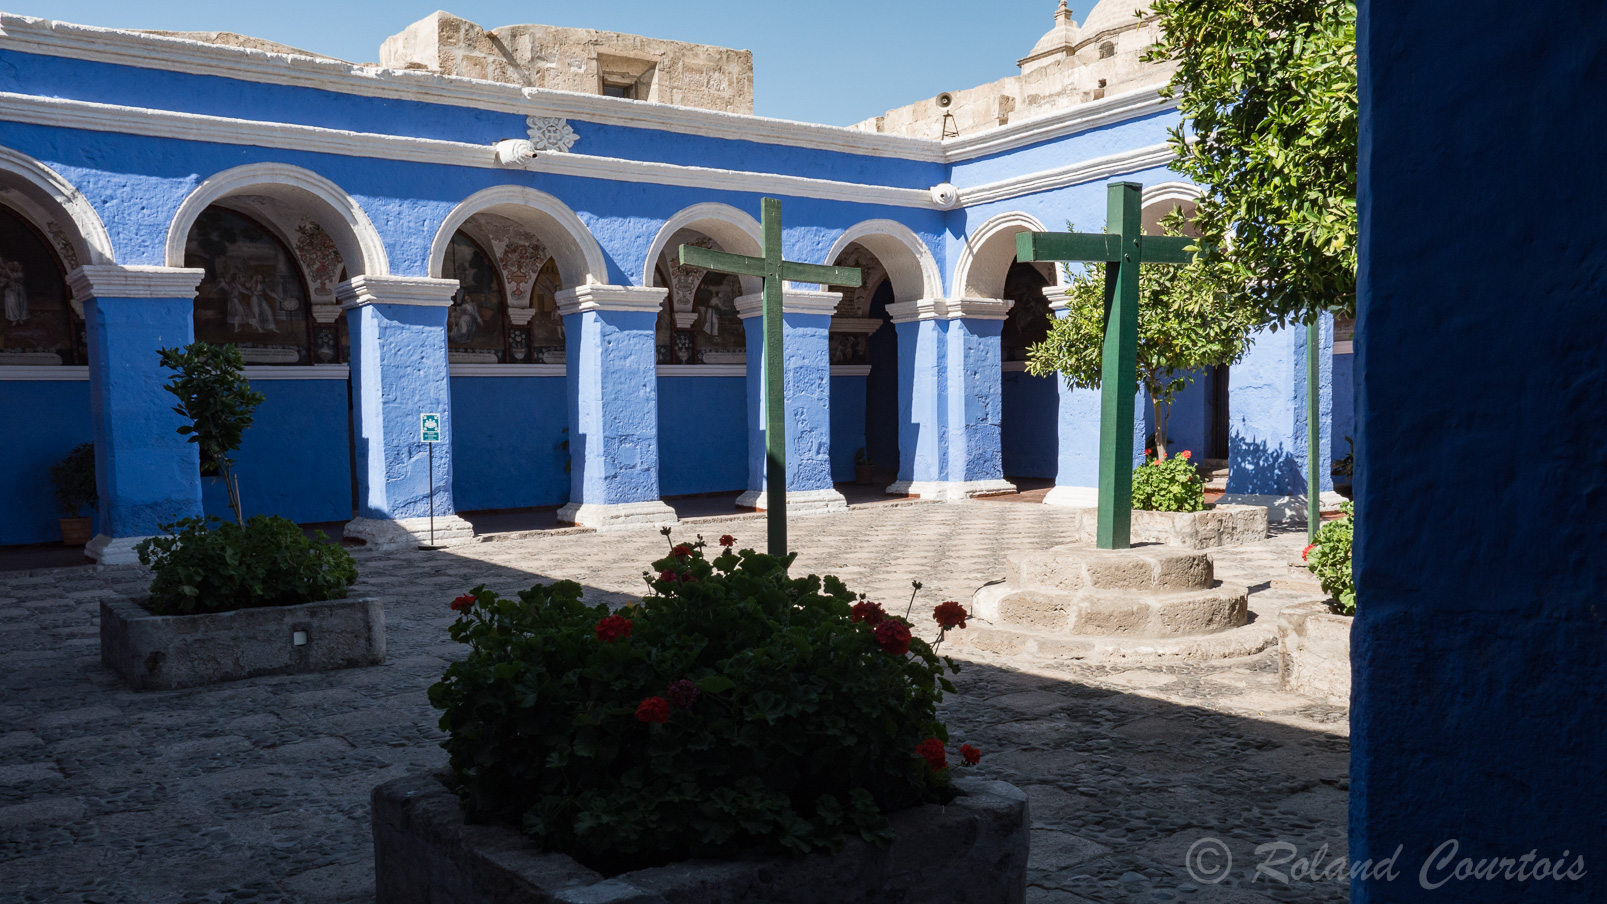 Le couvent de Santa Catalina est une véritable petite ville dans la ville, avec ses ruelles bordées de maisonnettes colorées d'ocre, de bleu, de blanc, ses places et ses fontaines : un décor qui rappelle la lointaine Andalousie. Il fut fondé sous Philippe II, en 1579. C'est un lieu de calme et de sérénité, en plein cœur d'Arequipa.